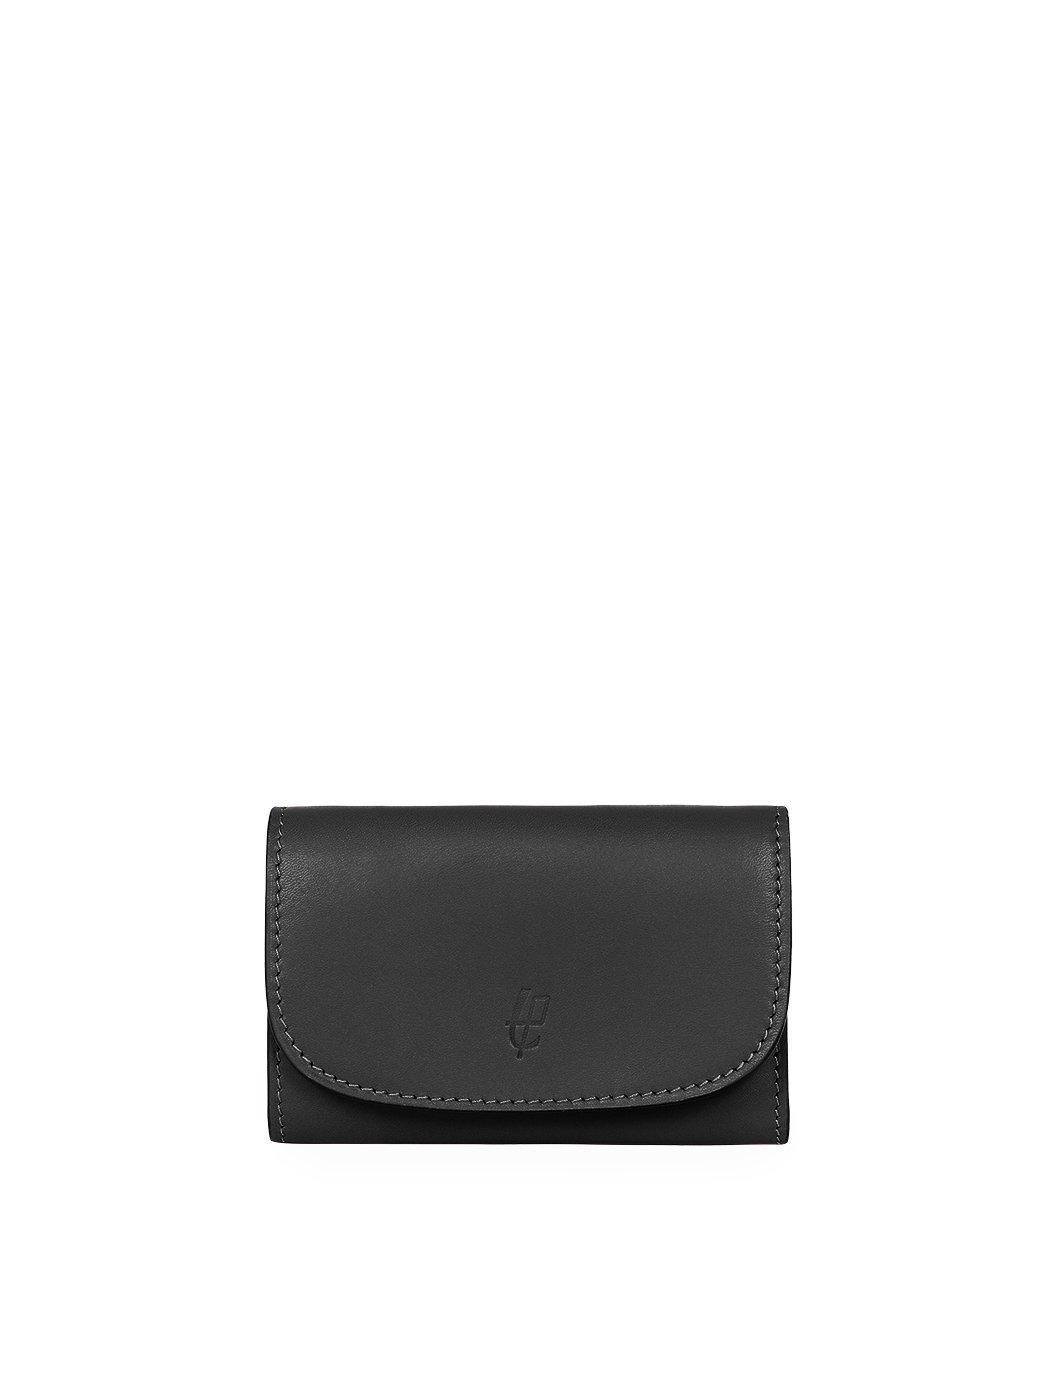 Компактный бумажник с карманом для мелочи на молнии черного цвета